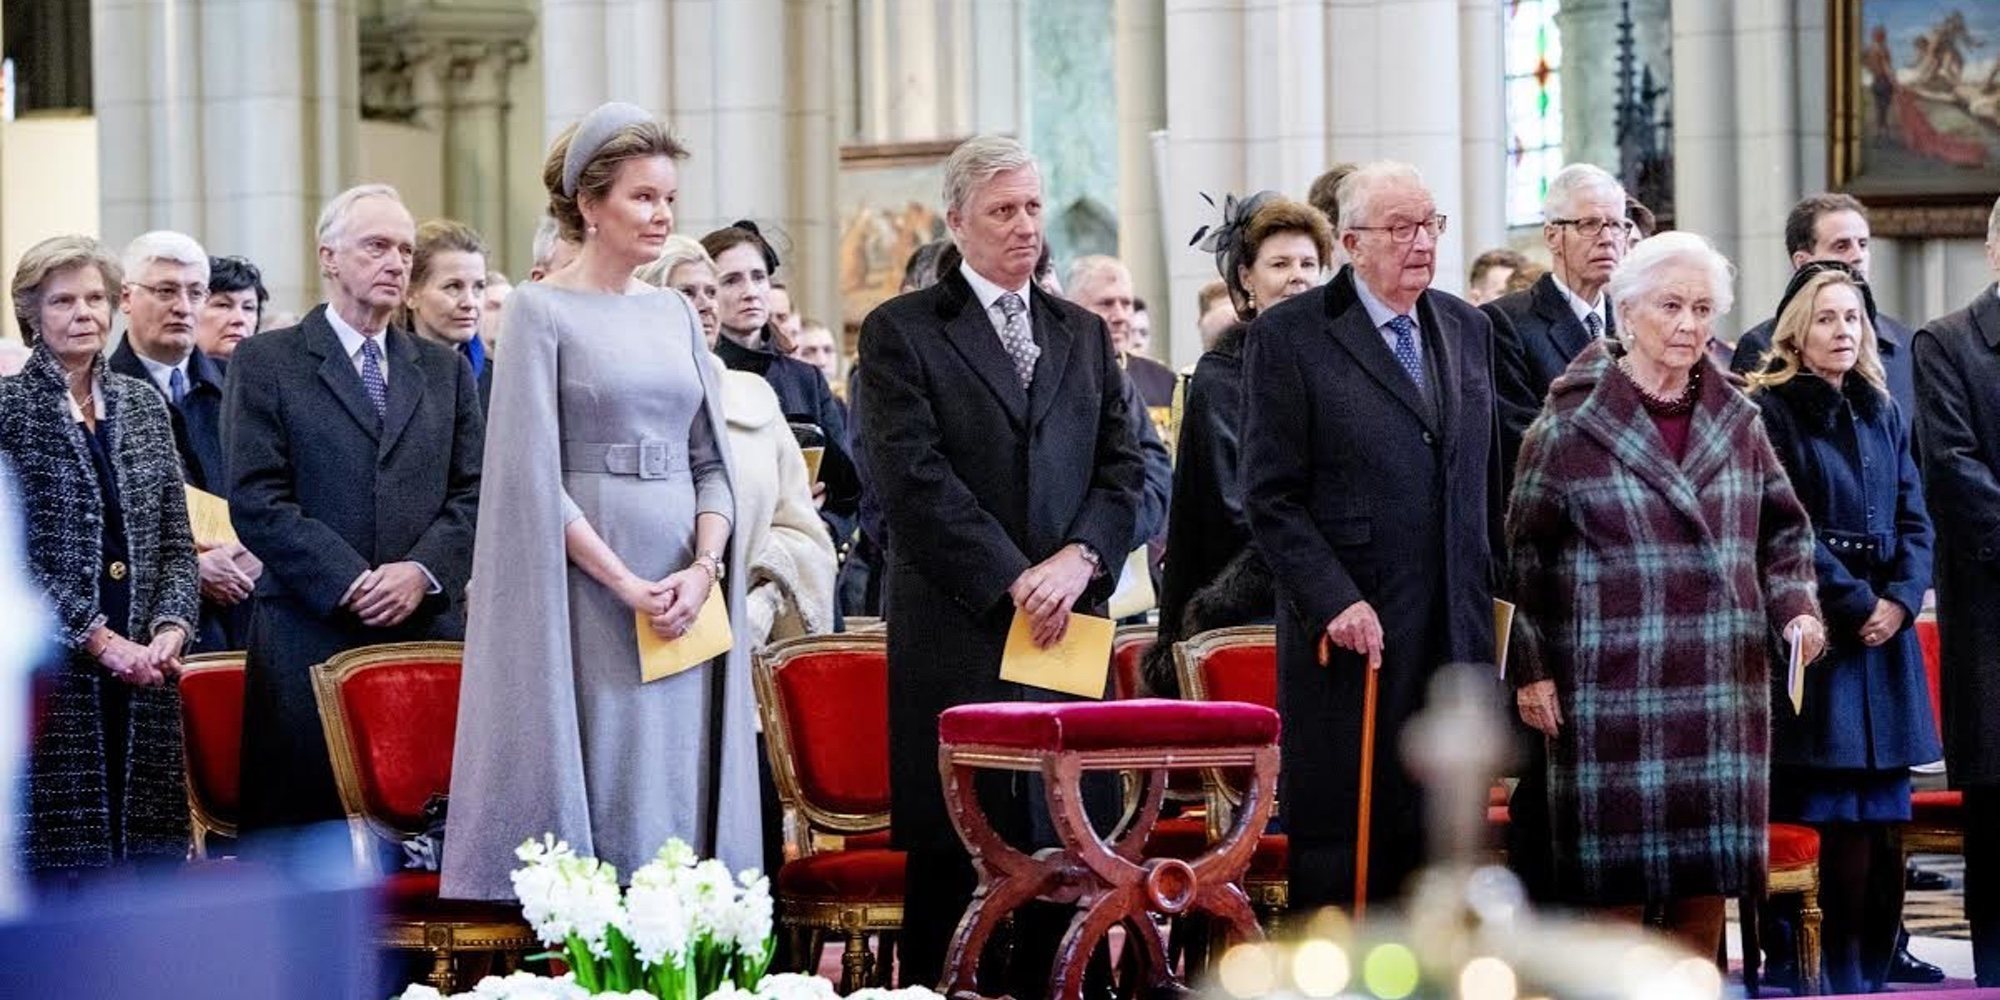 Alberto de Bélgica reaparece con los Reyes Felipe y Matilde y la Reina Paola tras confirmarse que Delphine Boël es su hija